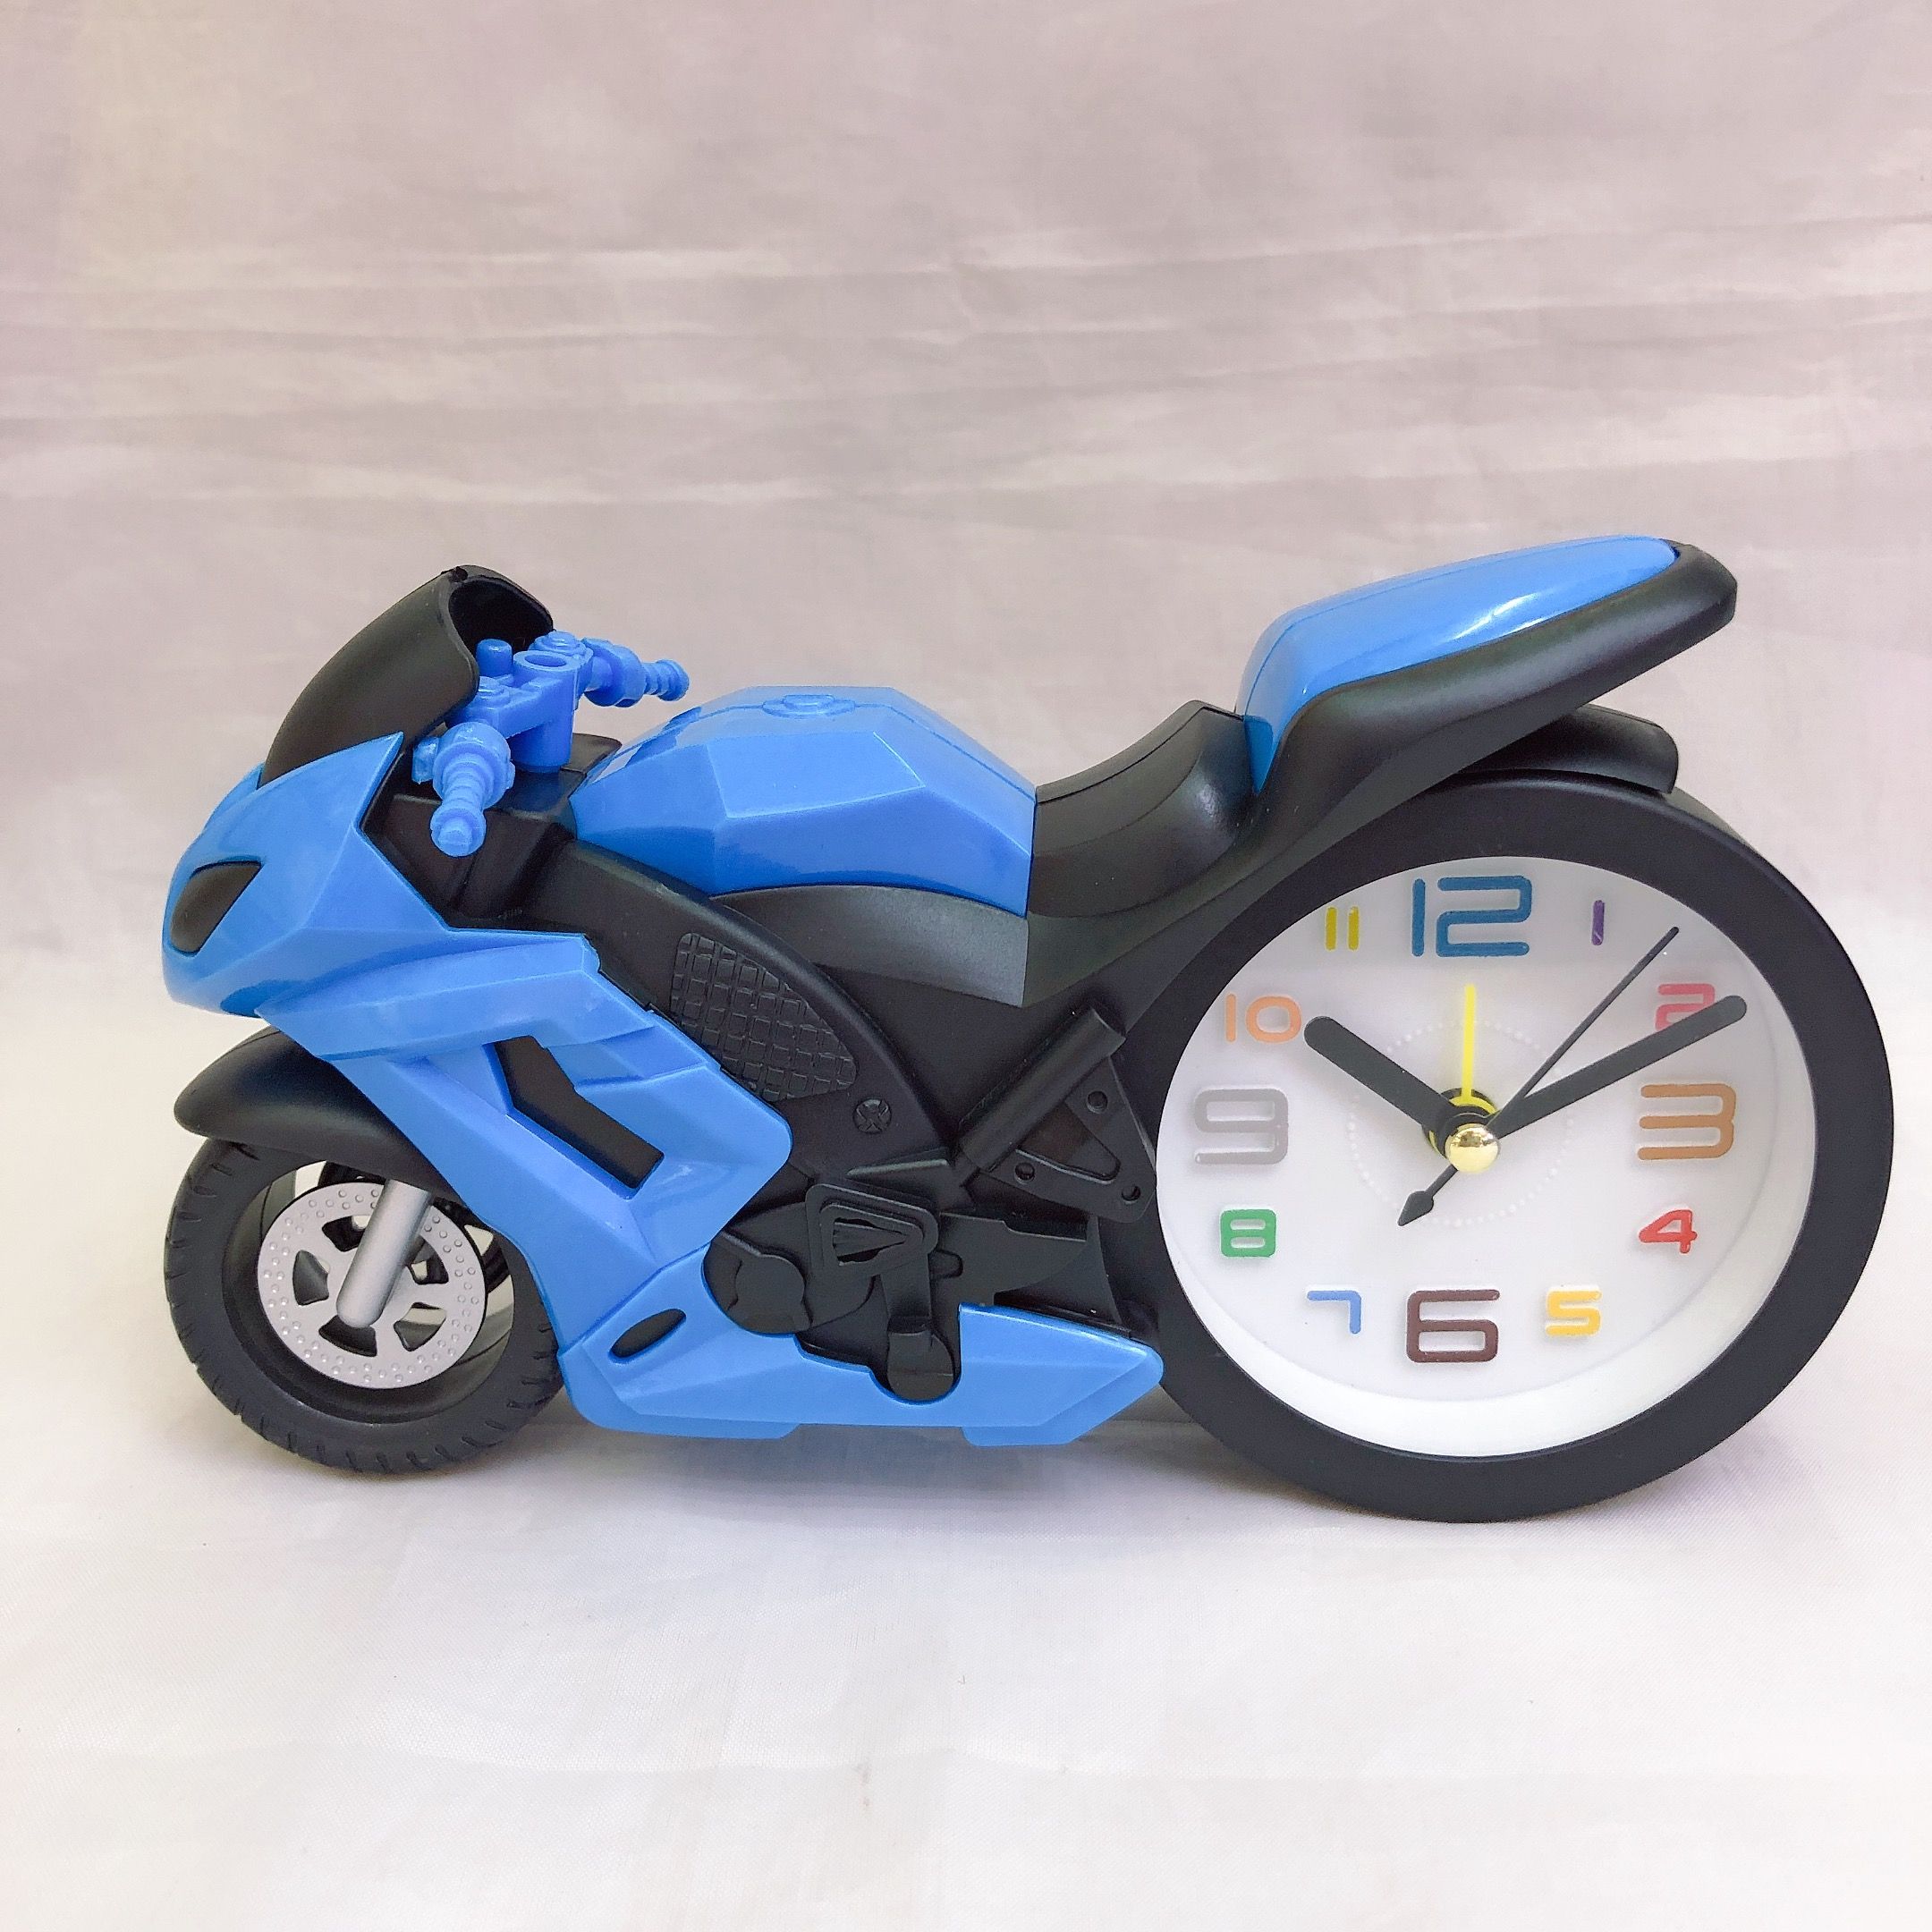 复古摩托车时尚闹钟个性创意儿童玩具造型礼品摆件产品图